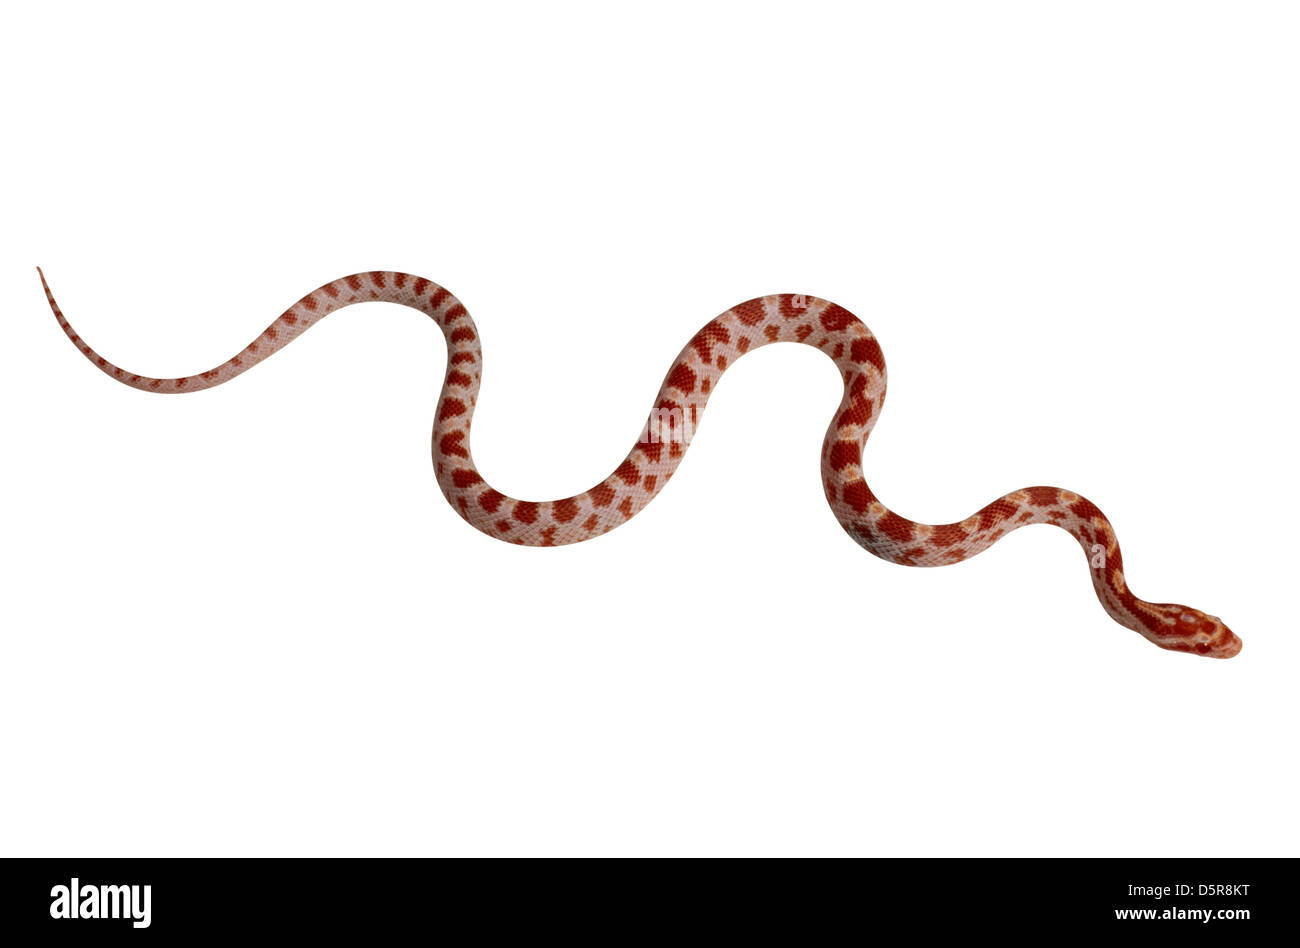 Snake isolated on white background Stock Photo